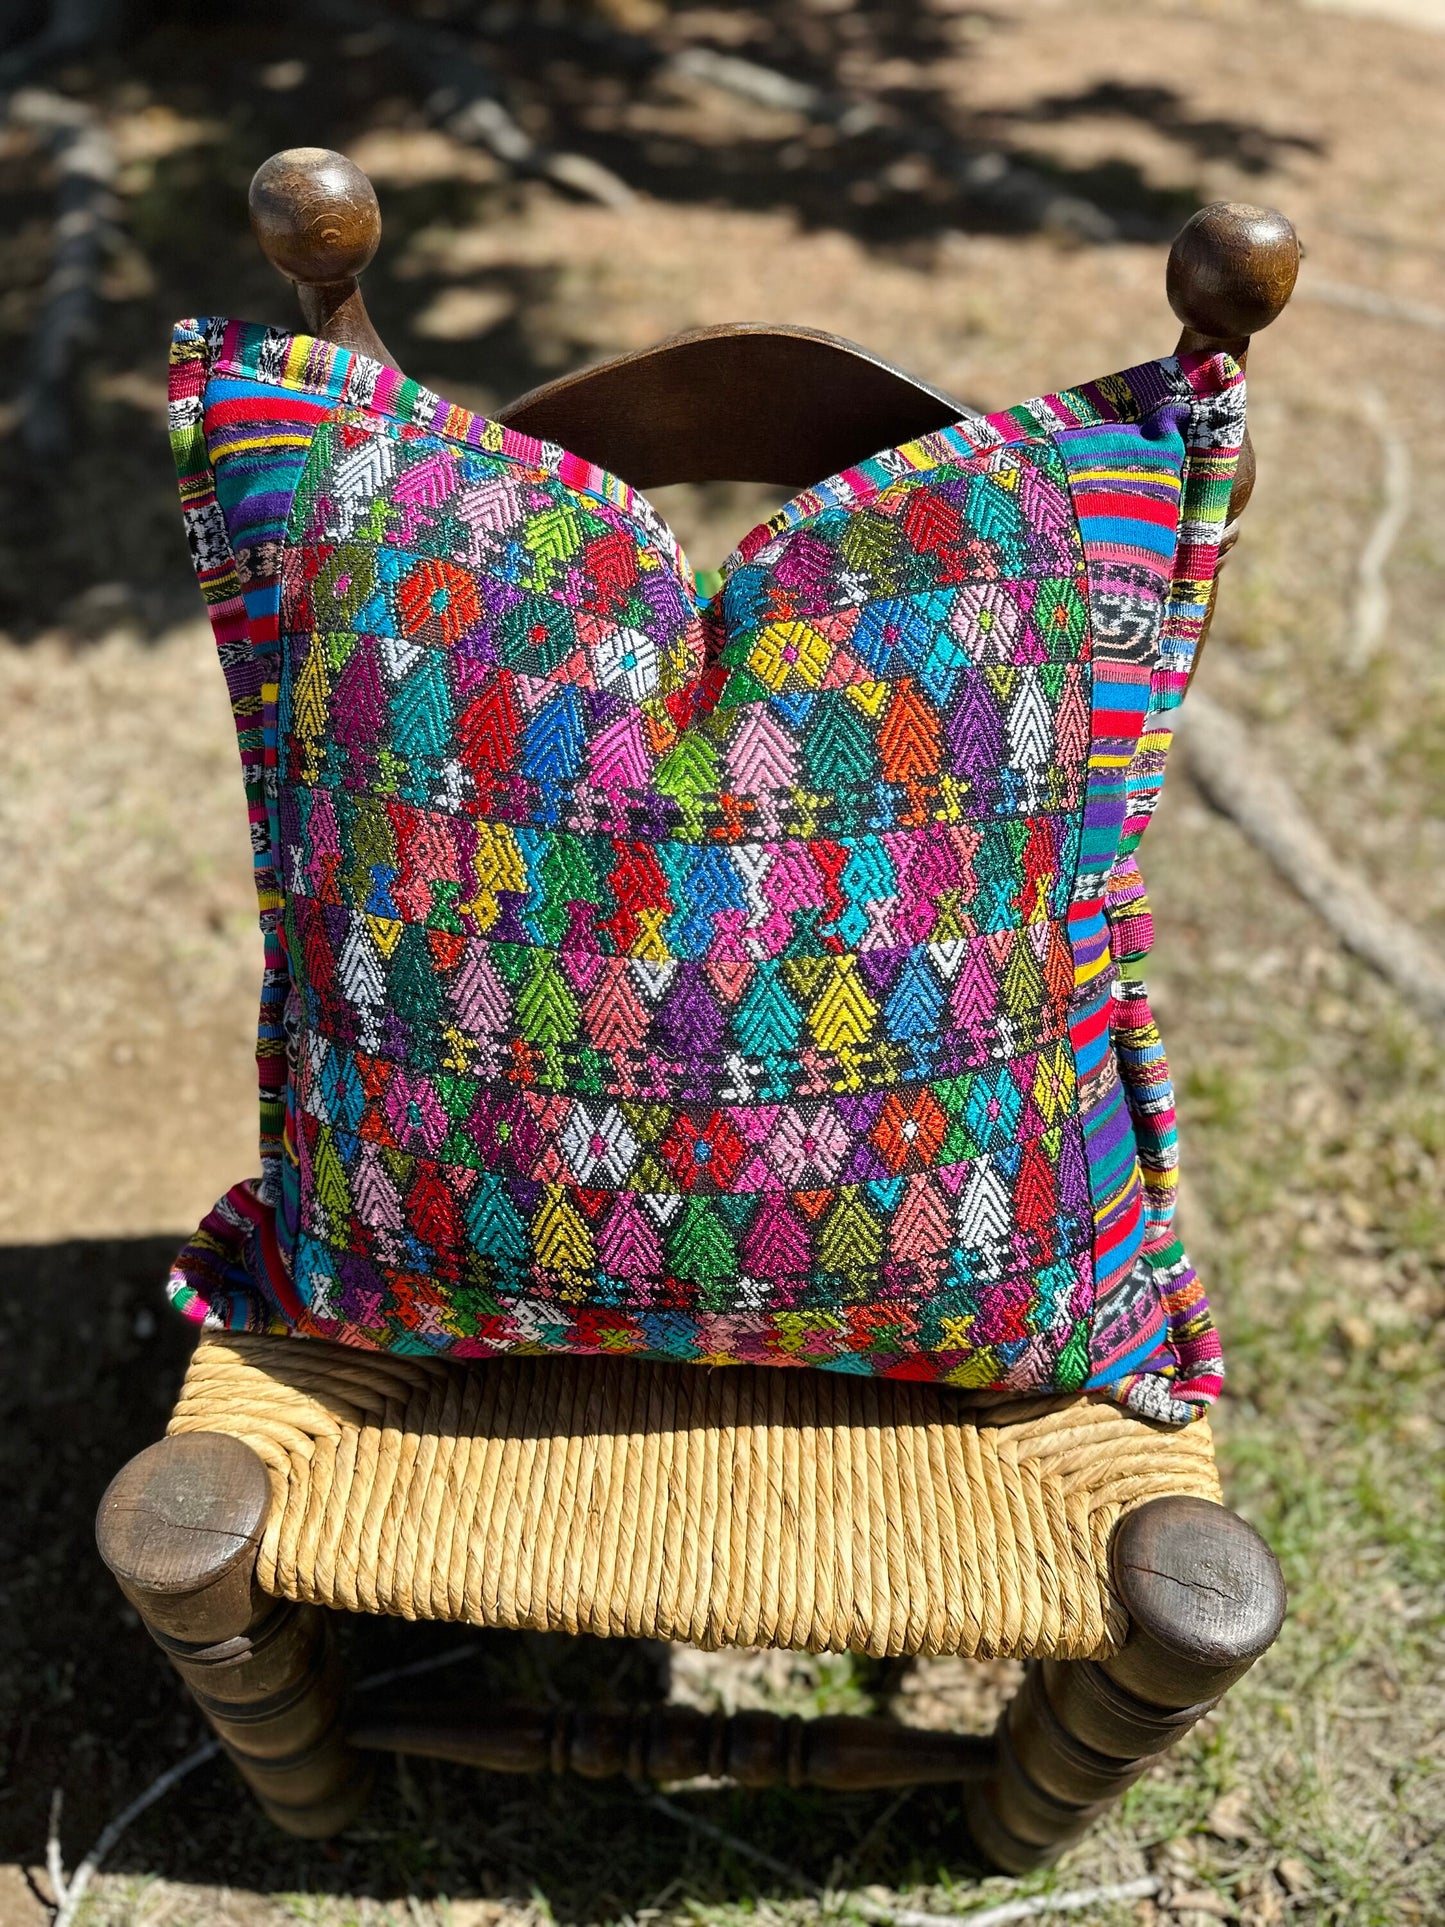 Guatemalan Huipil pillow covers from Coban